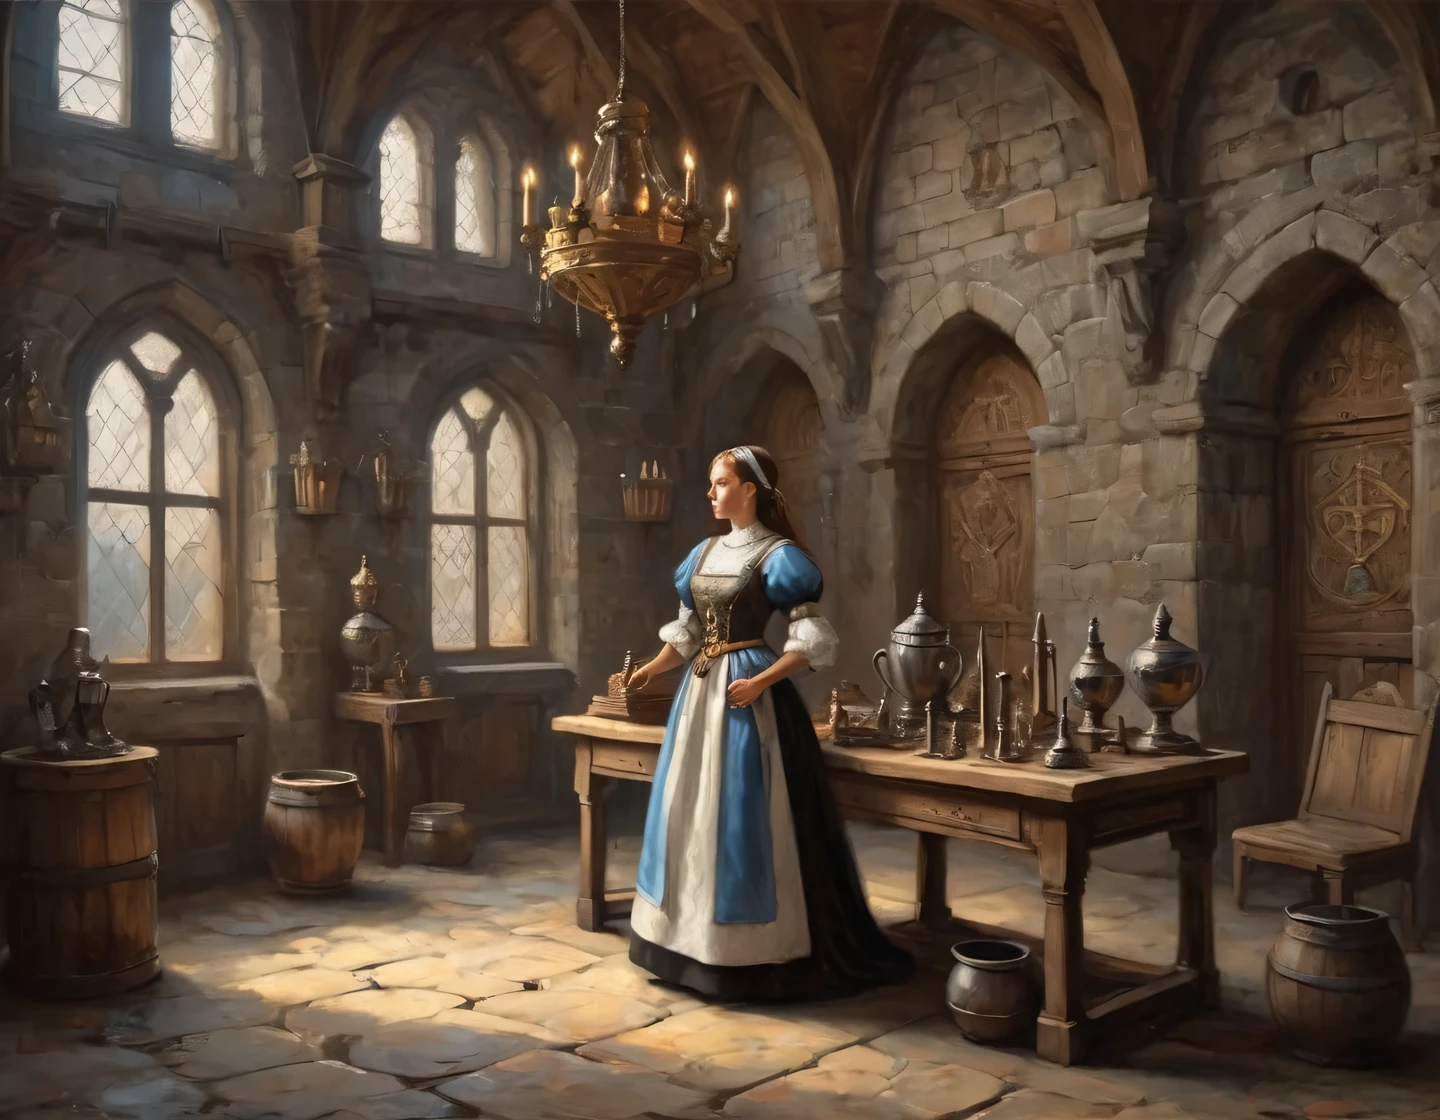 Древняя фотография, девушка-киборг в костюме горничной строит в зале средневекового замка, средневековая мебель, трофеи и оружие на стенах, геральдика, реалистичный